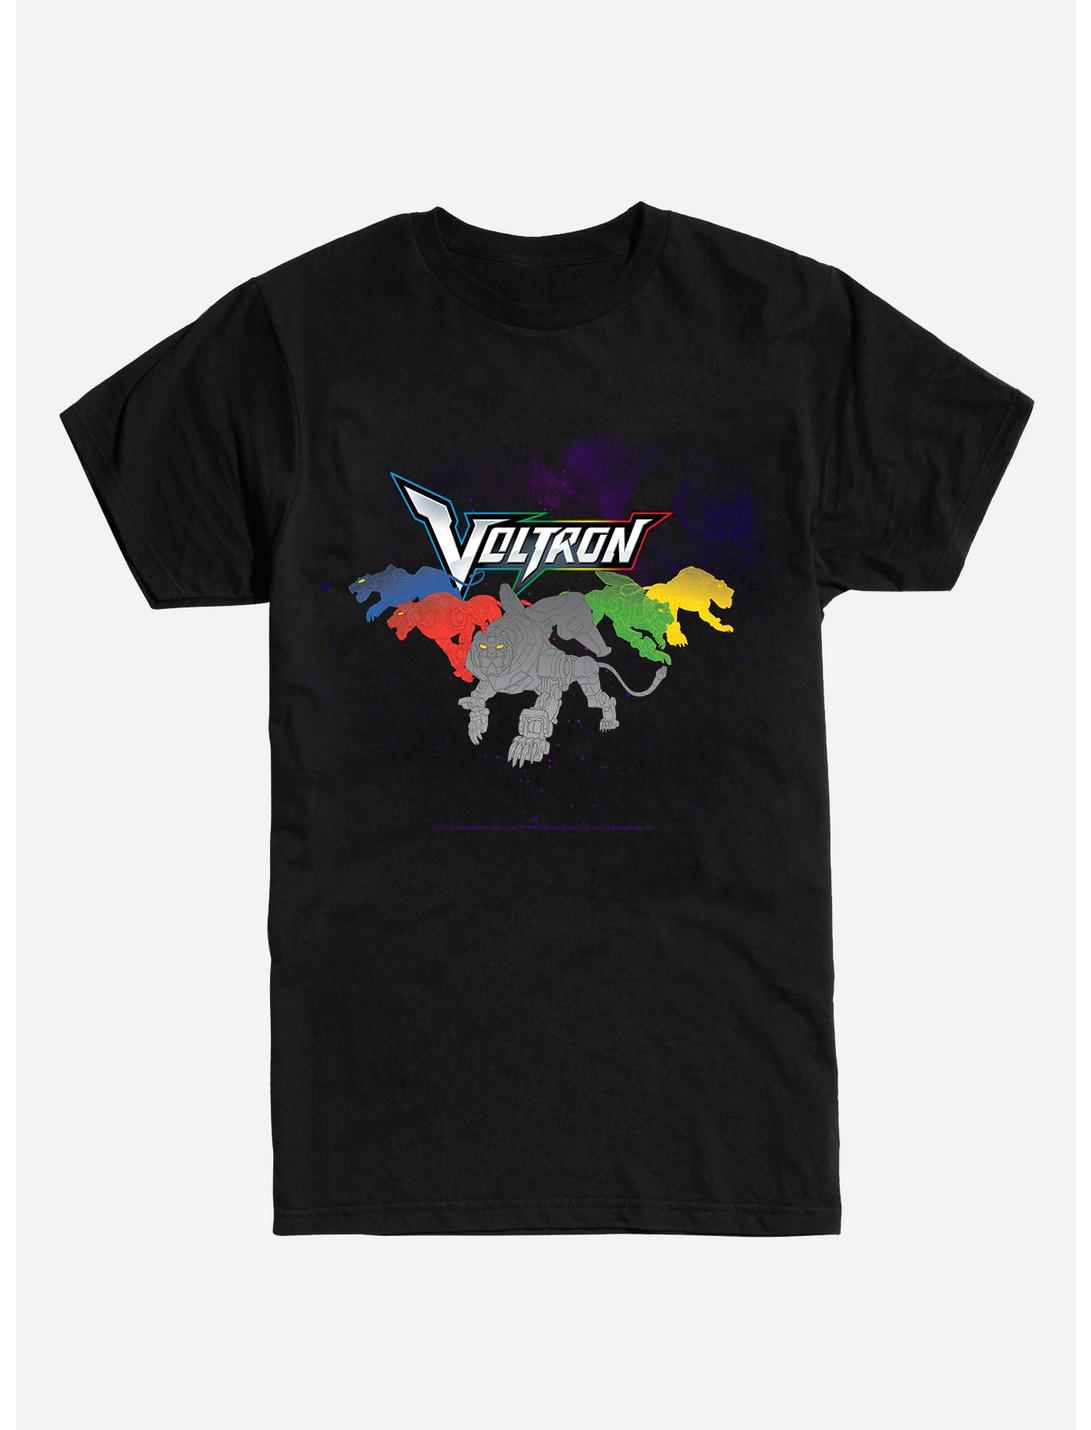 Voltron Lion Pack T-Shirt, BLACK, hi-res